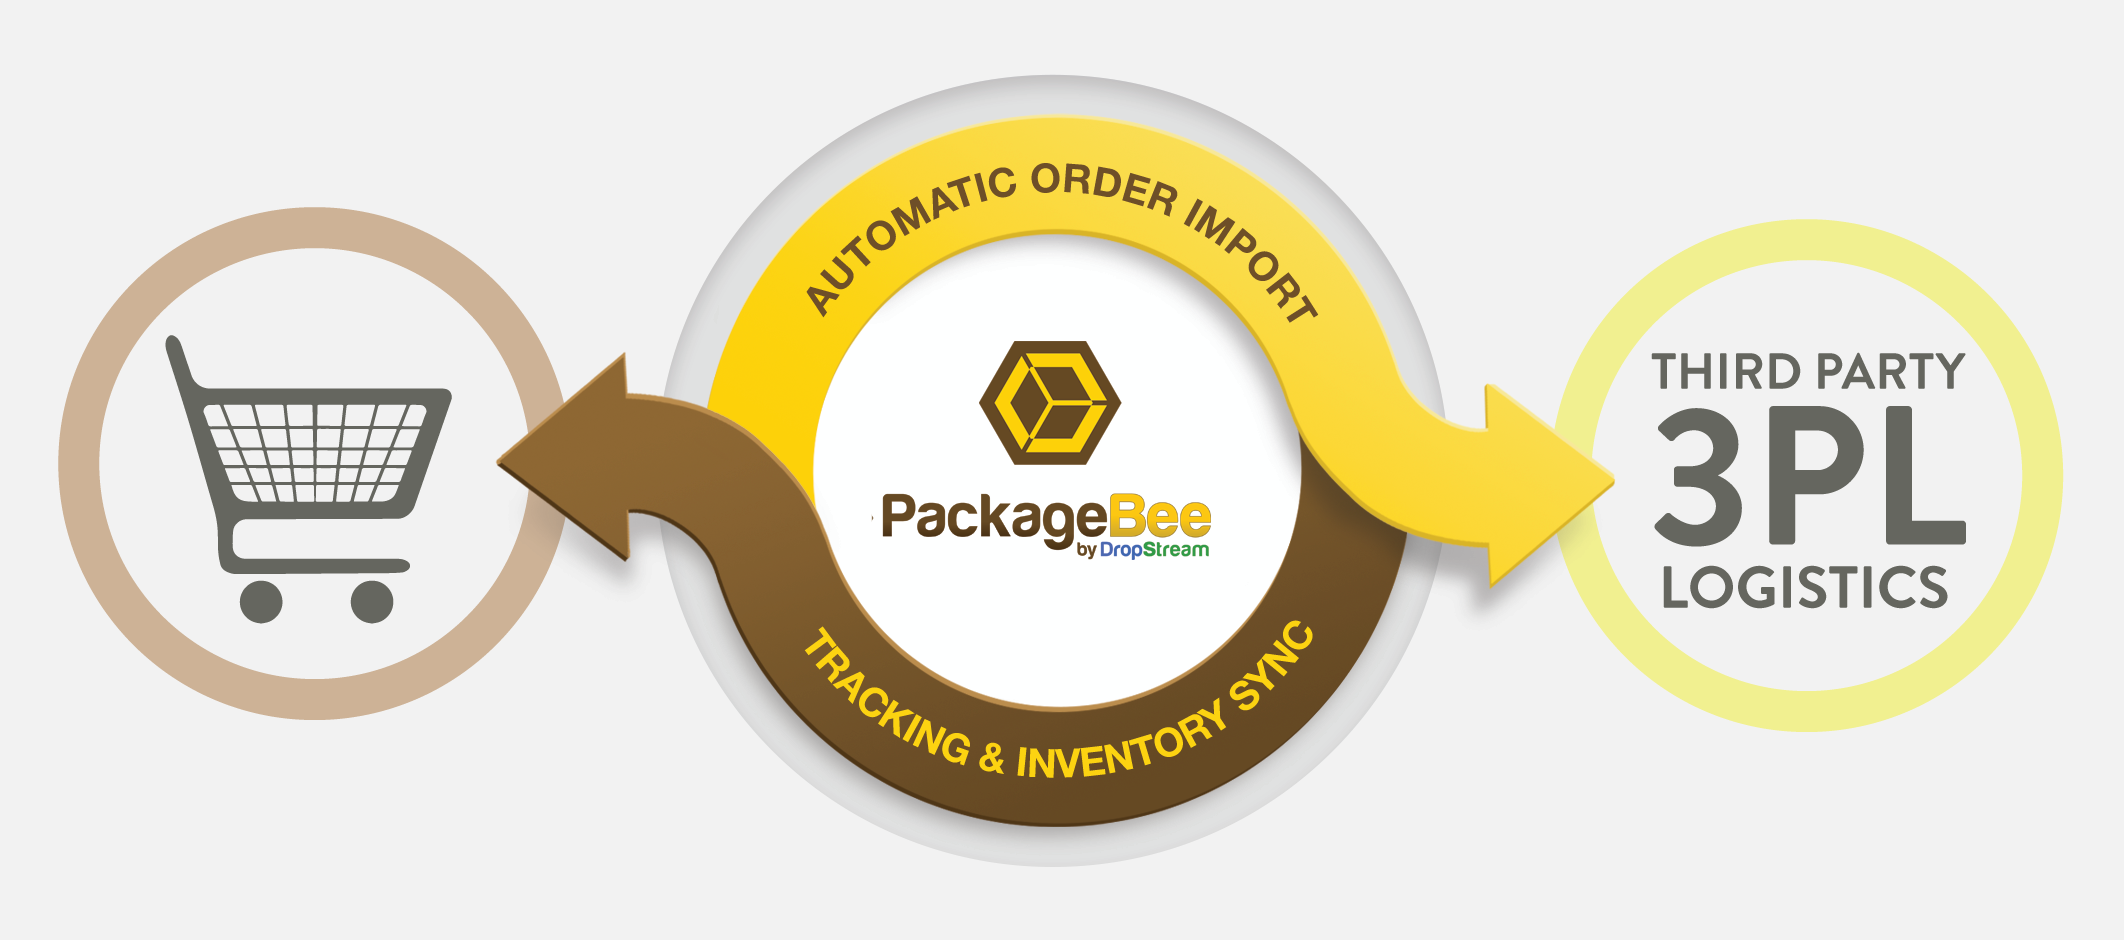 PackageBee - Workflow